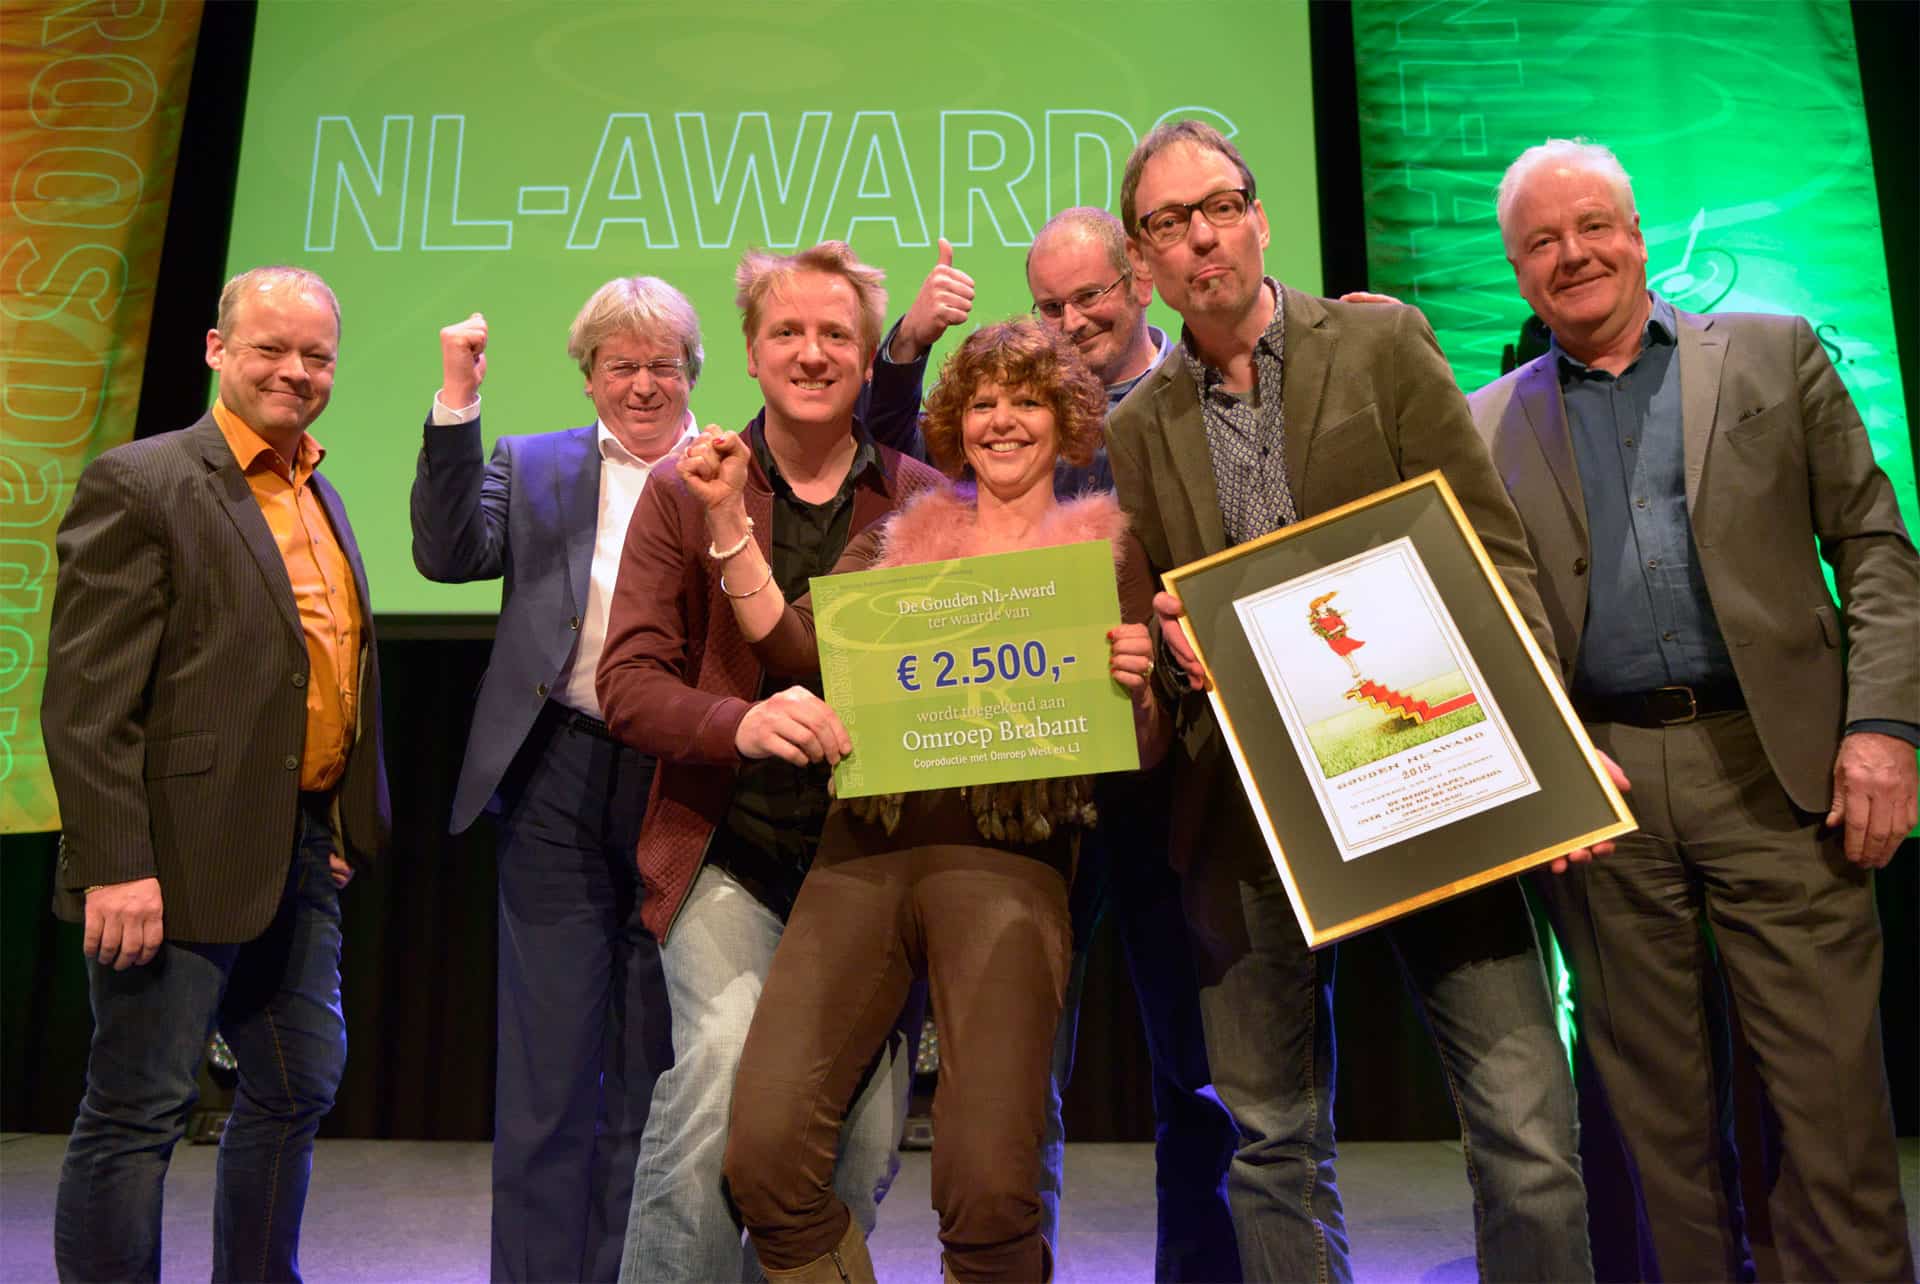 NL AWARD 2015 Ton van Zantvoort